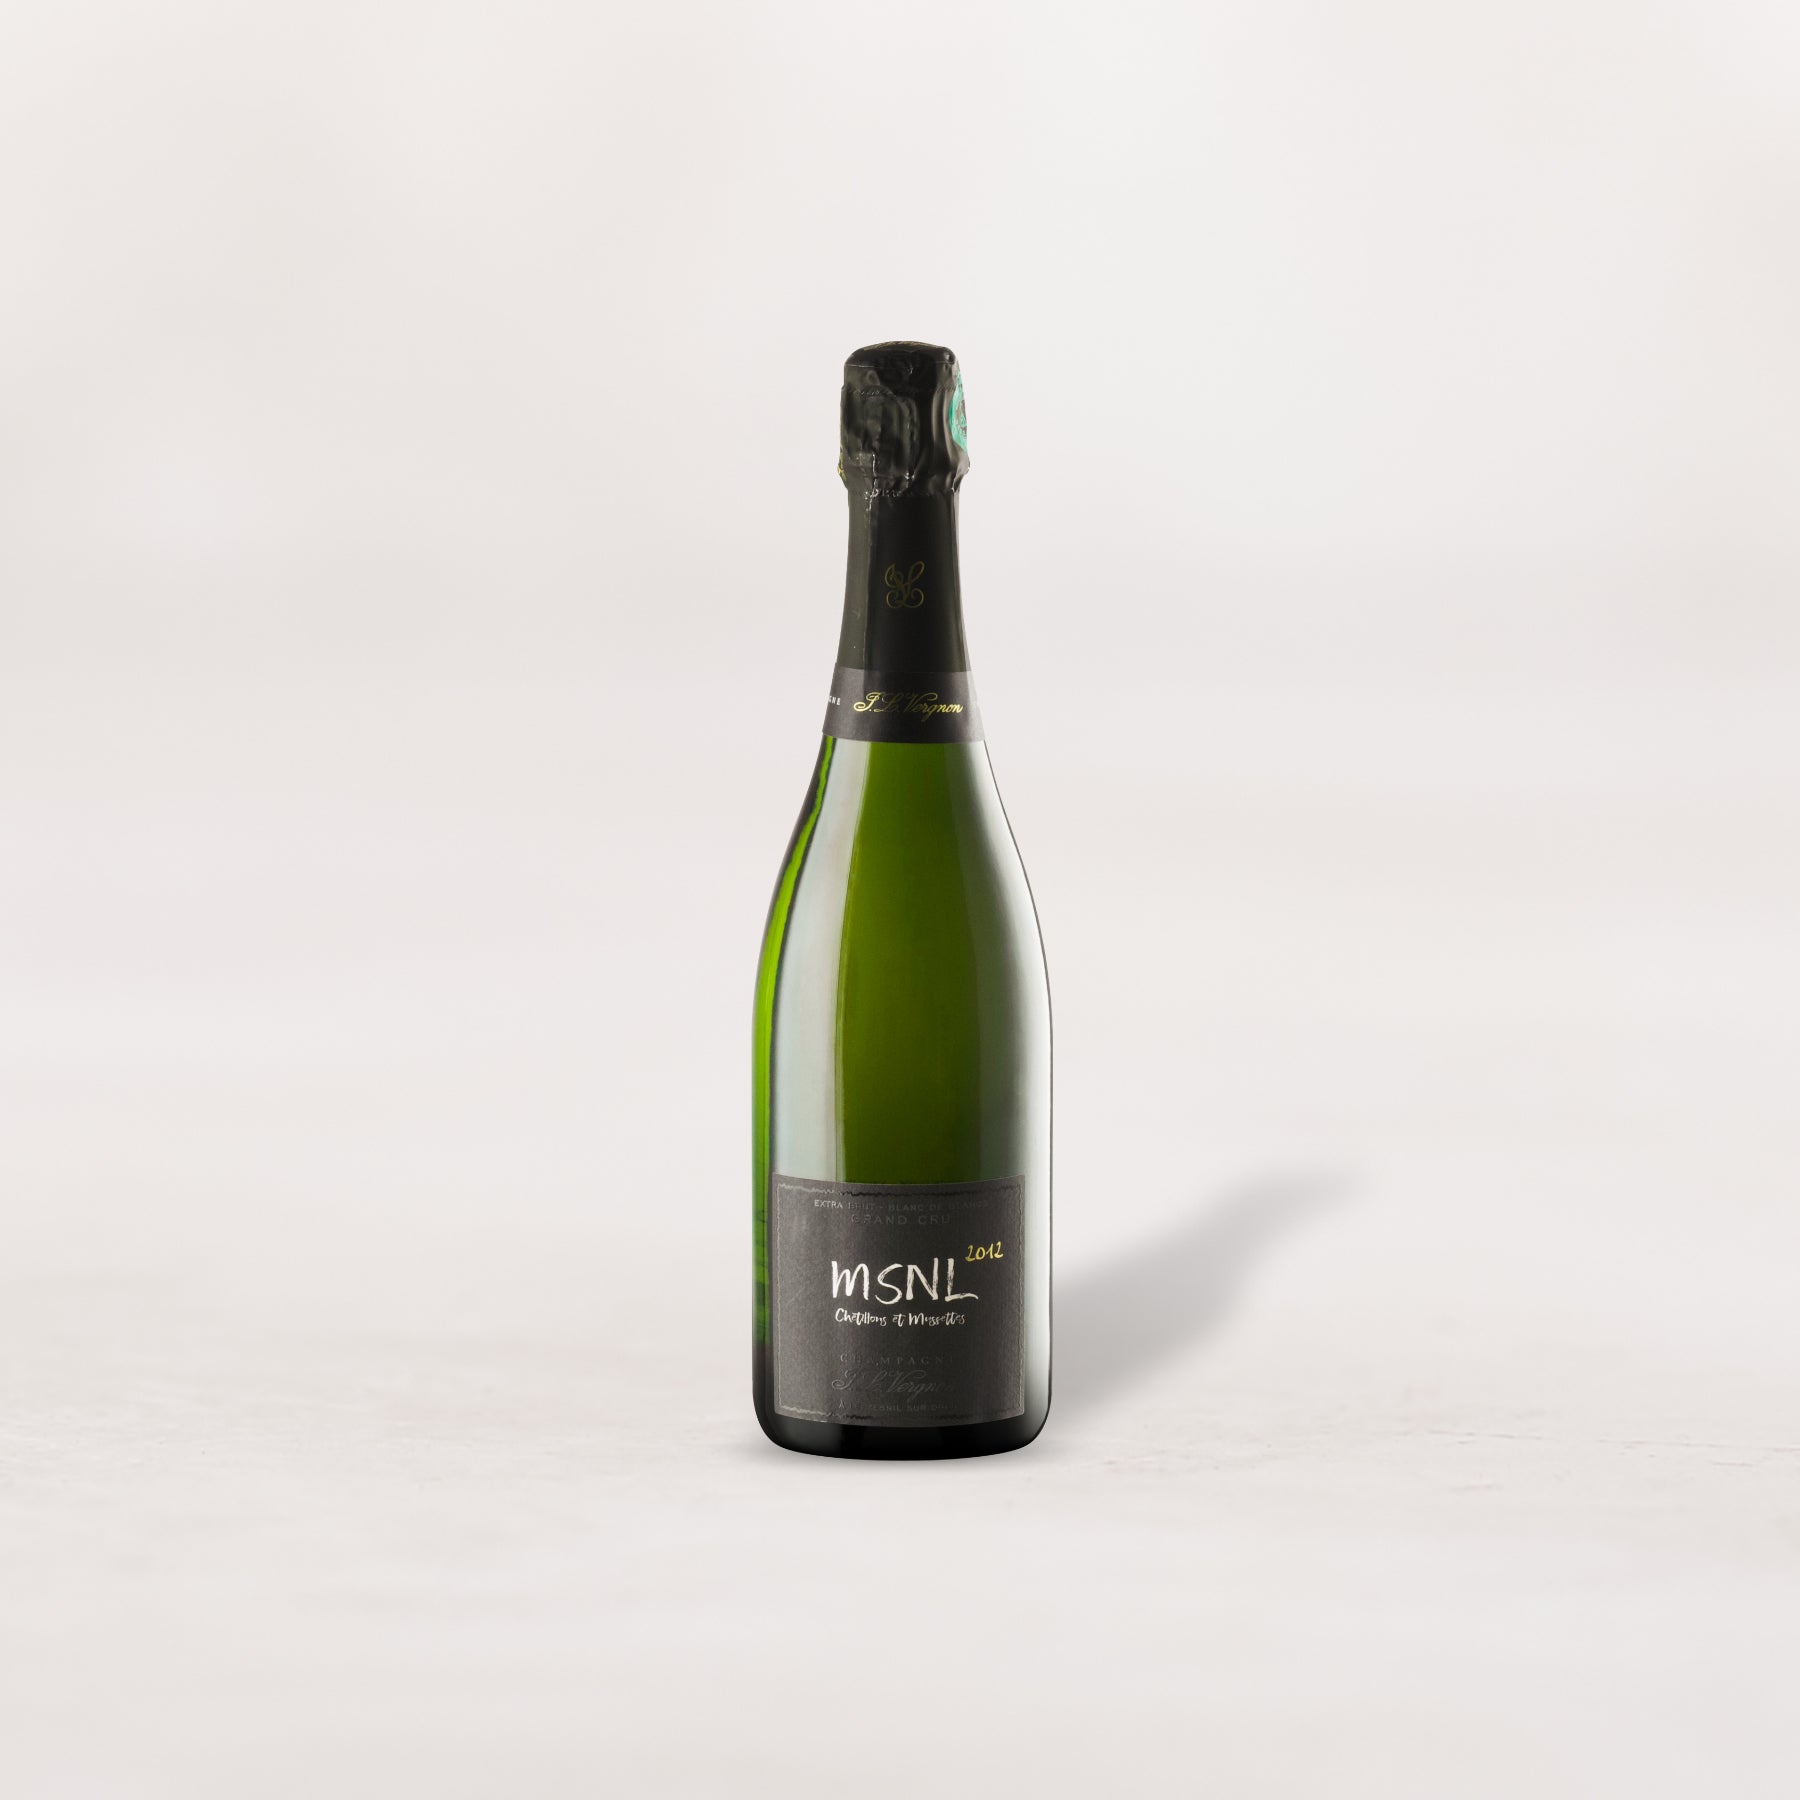 2012 Vergnon, Champagne Grand Cru 